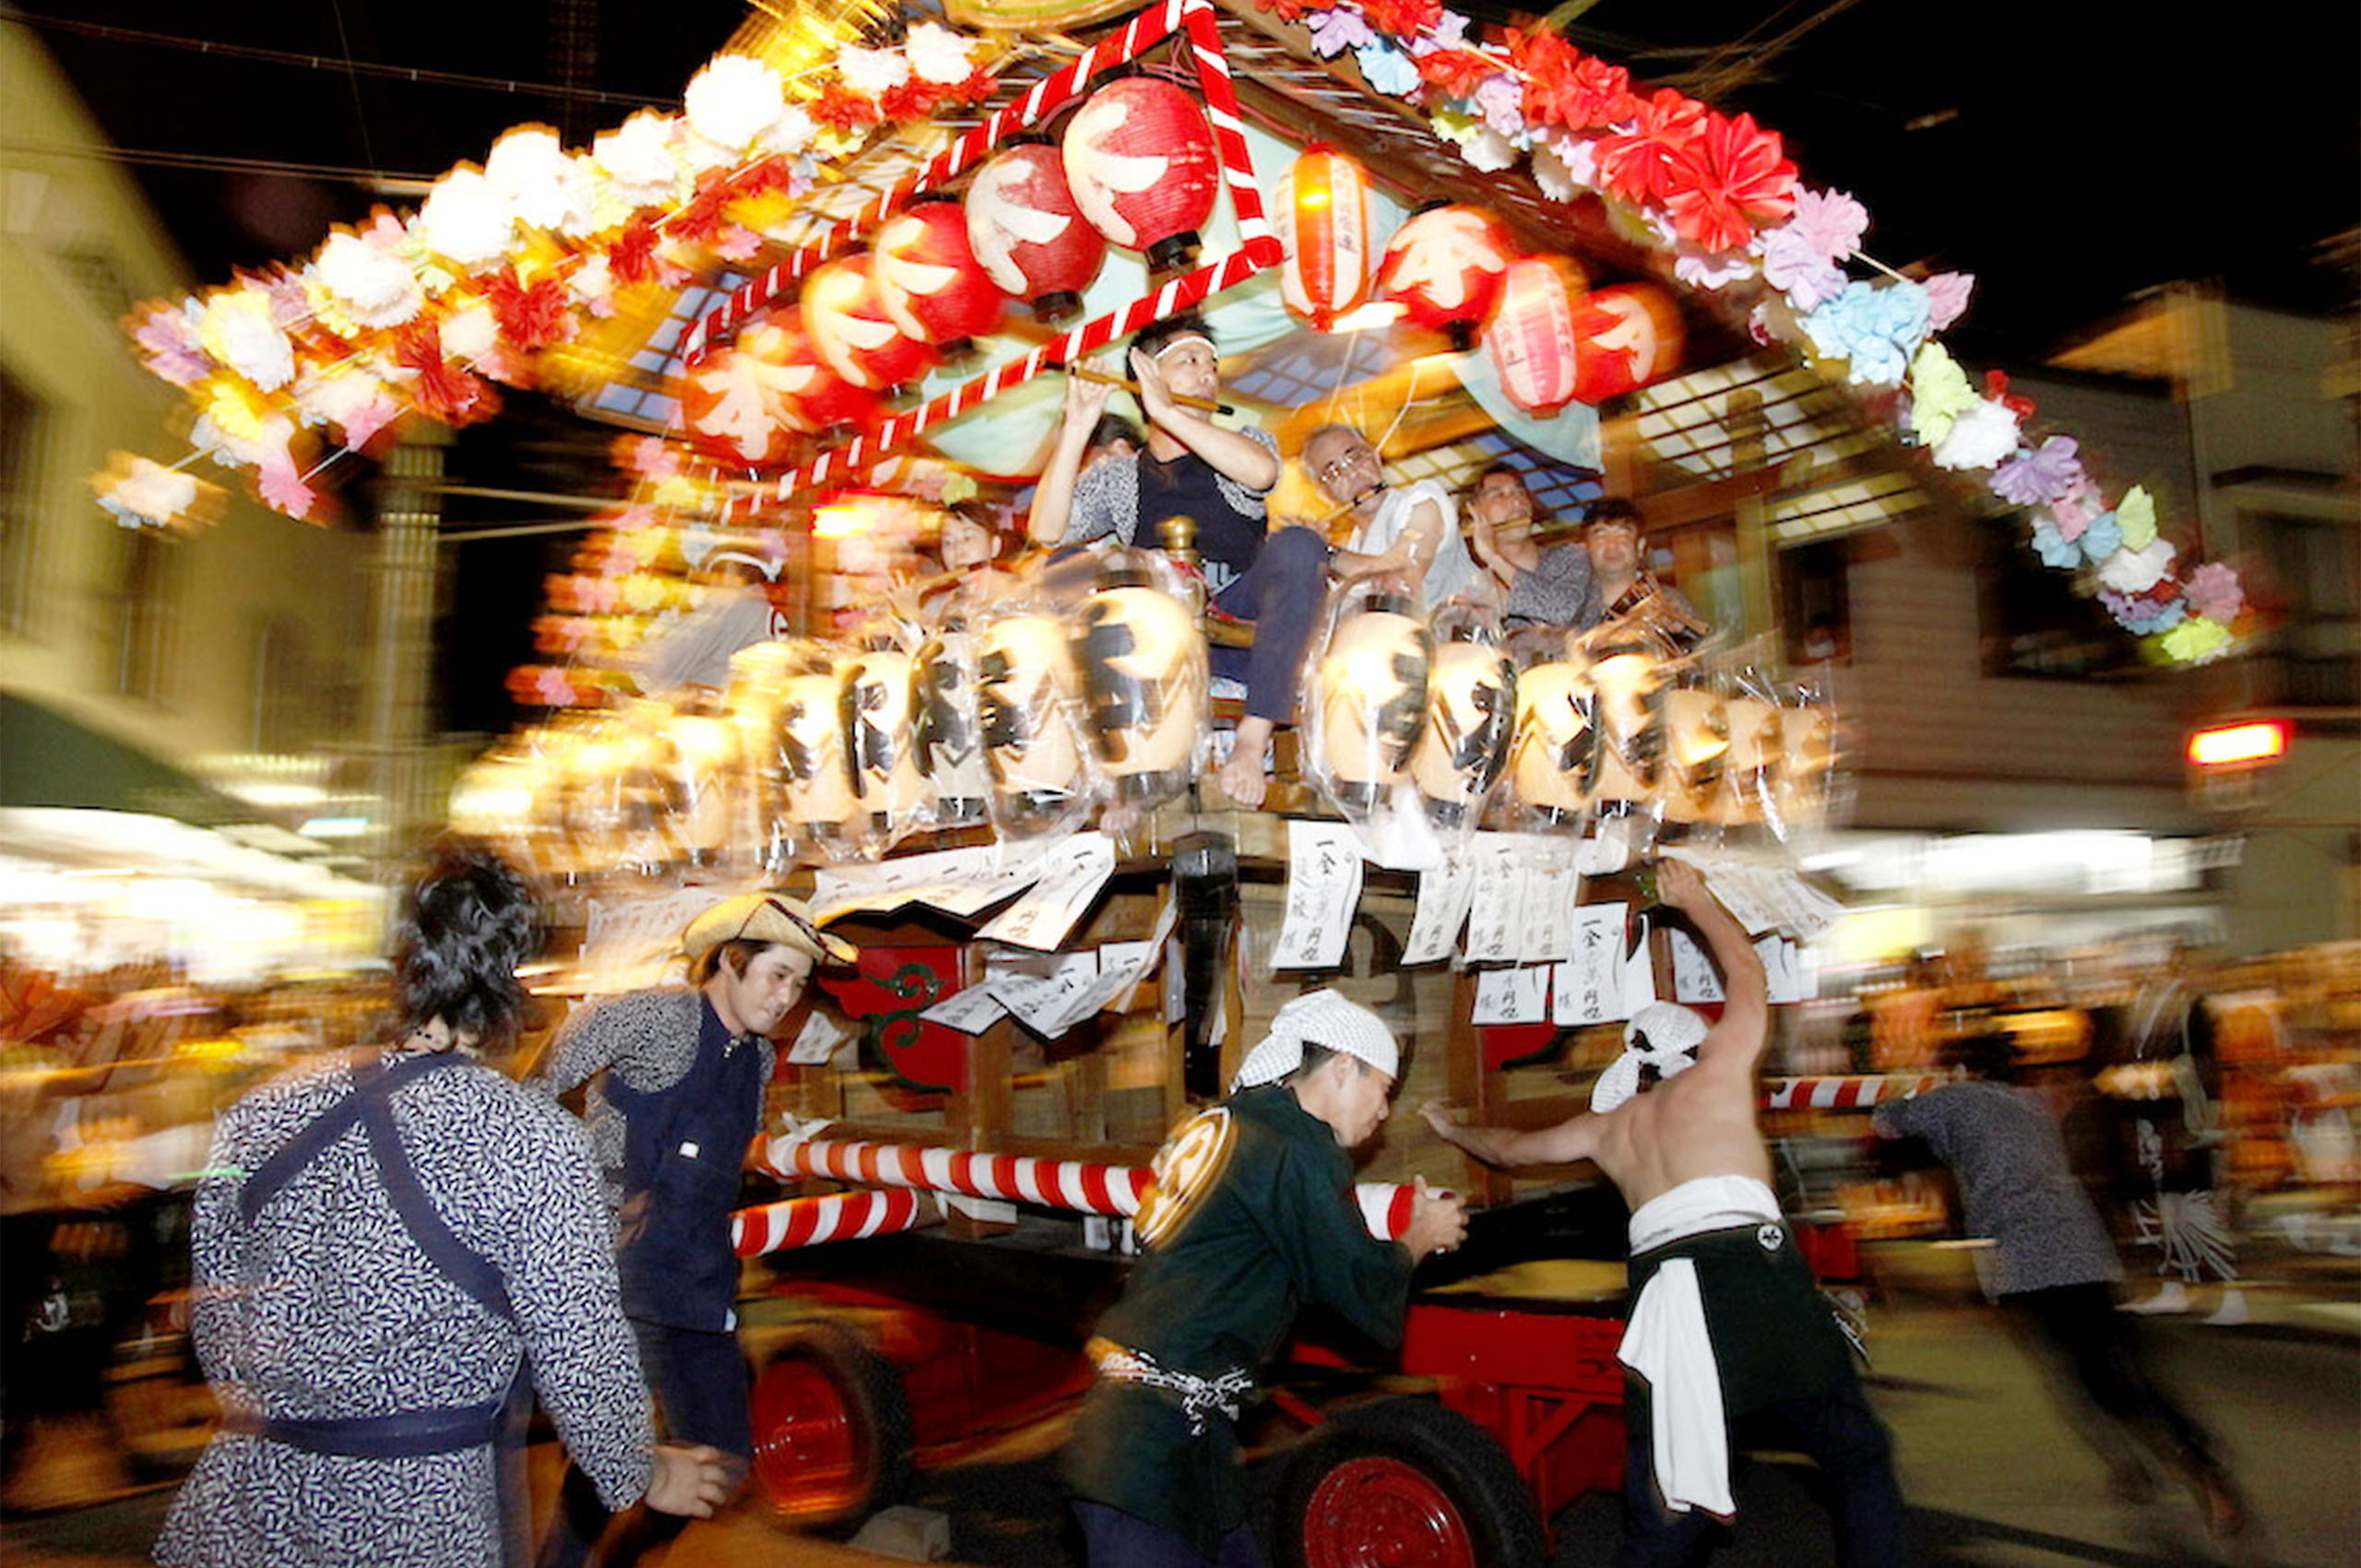 400年以上続く歴史のある祭りぐるぐる回る山車は必見！江戸崎祇園祭Things to do